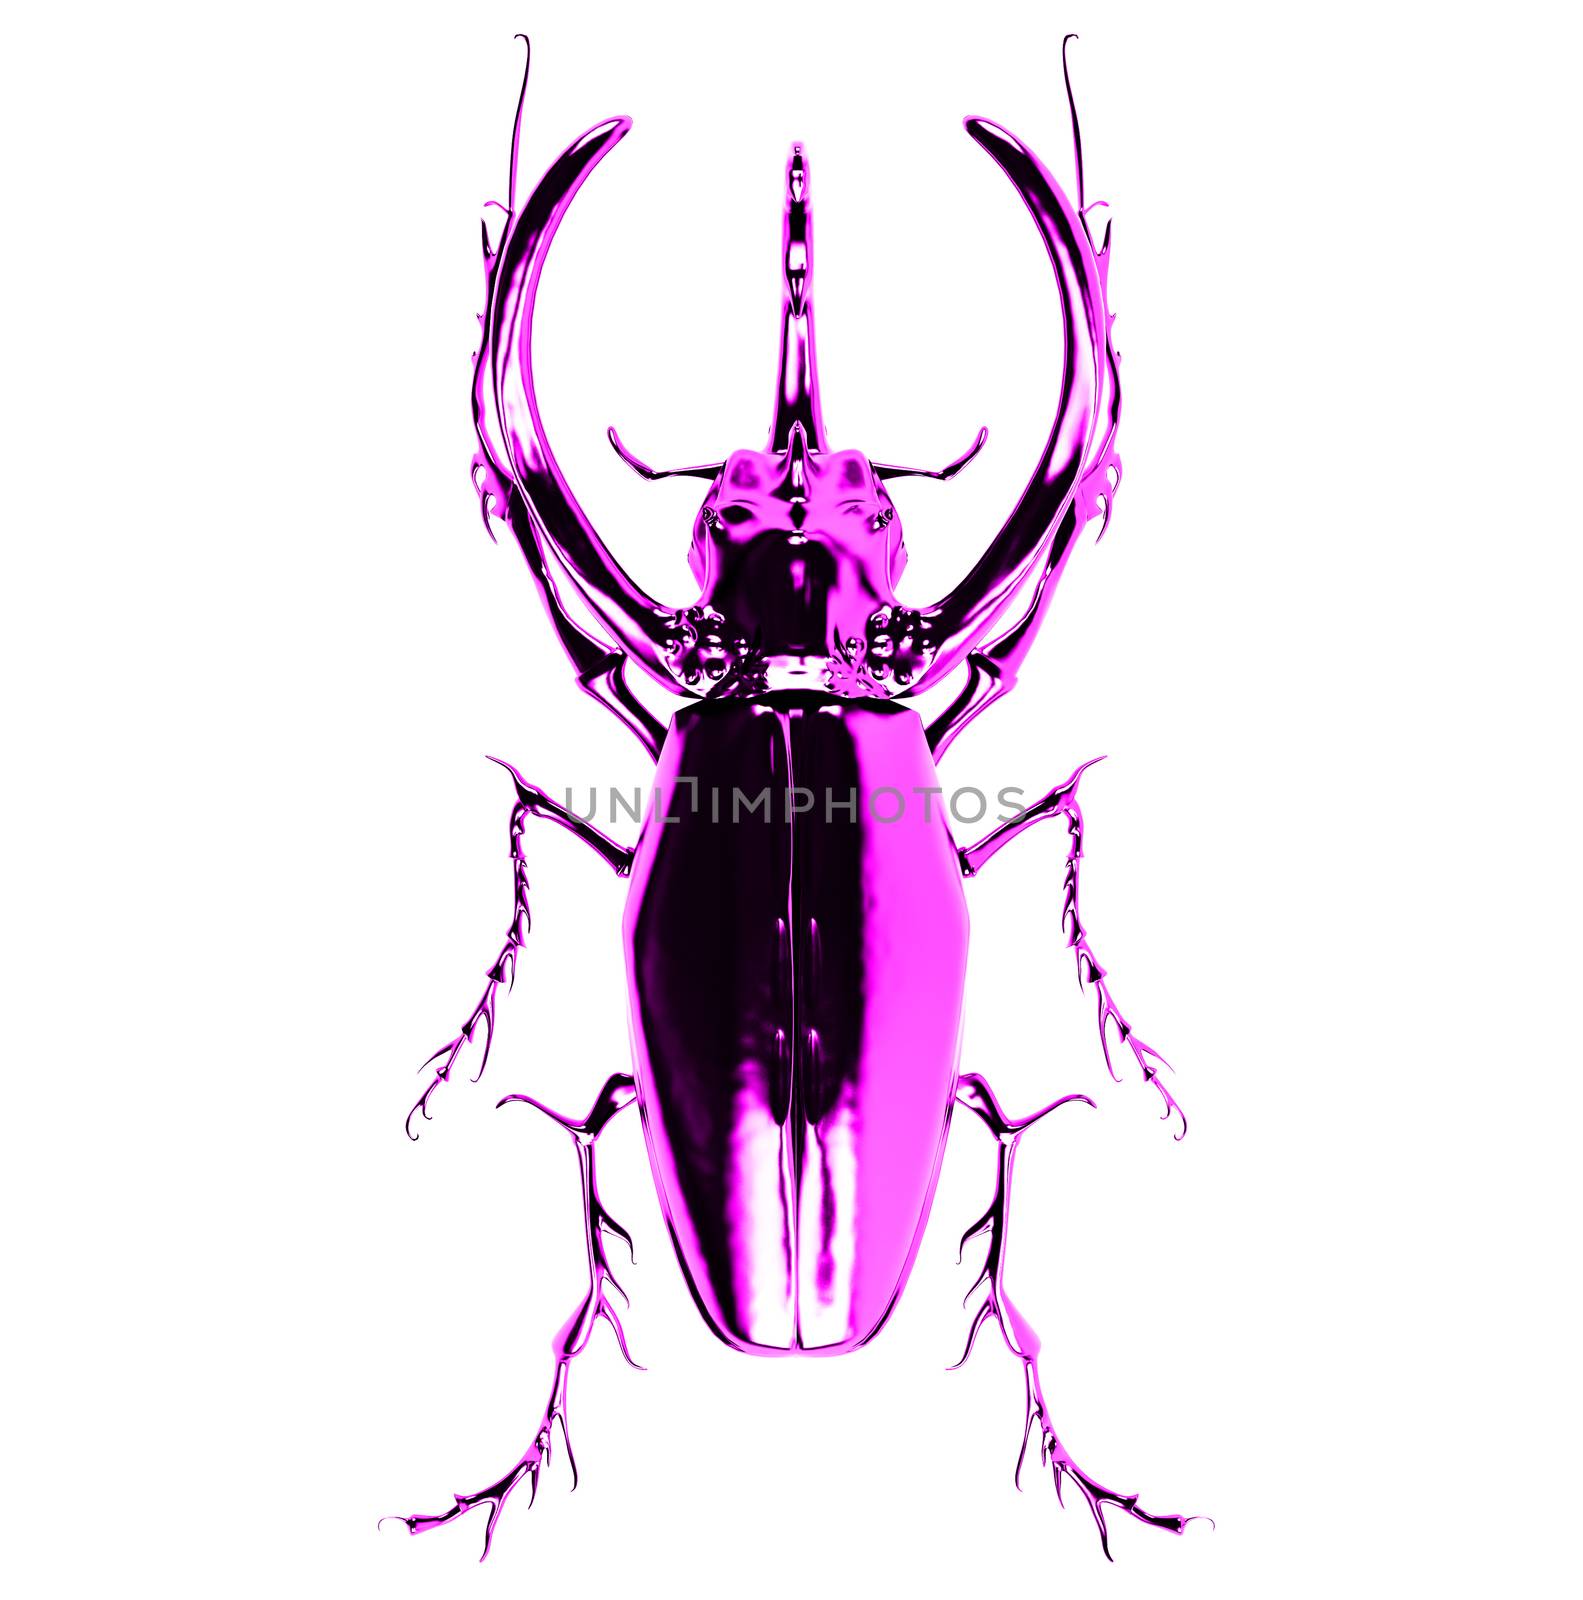 pink  rhinoceros beetle. 3D rendering